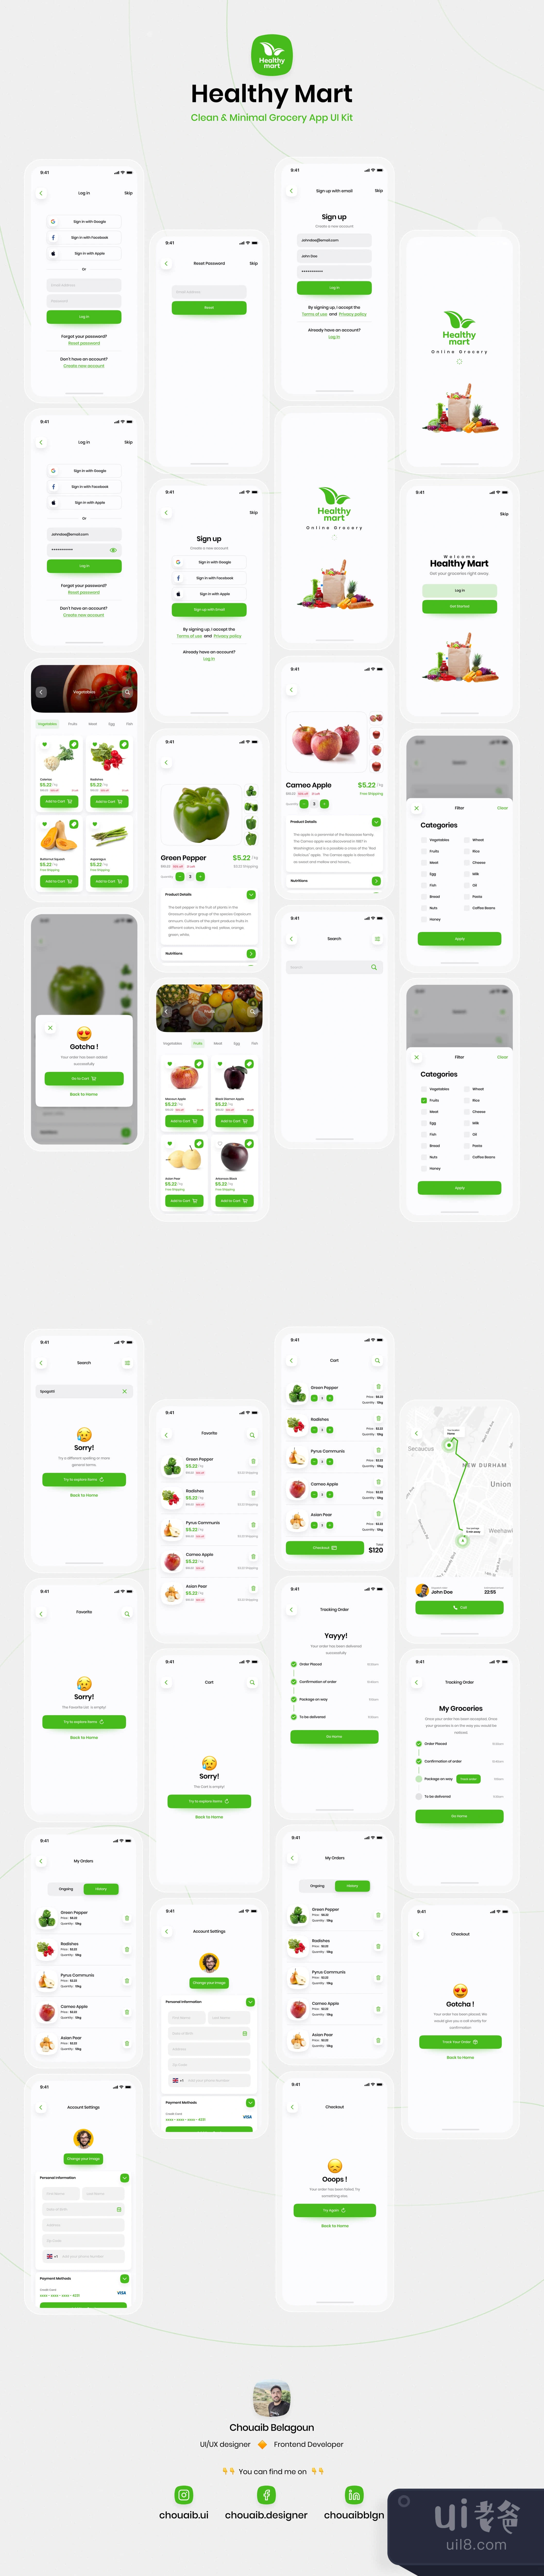 健康超市 - 杂货店应用UI设计套件 (Healthy Mart - Grocery App UI插图1